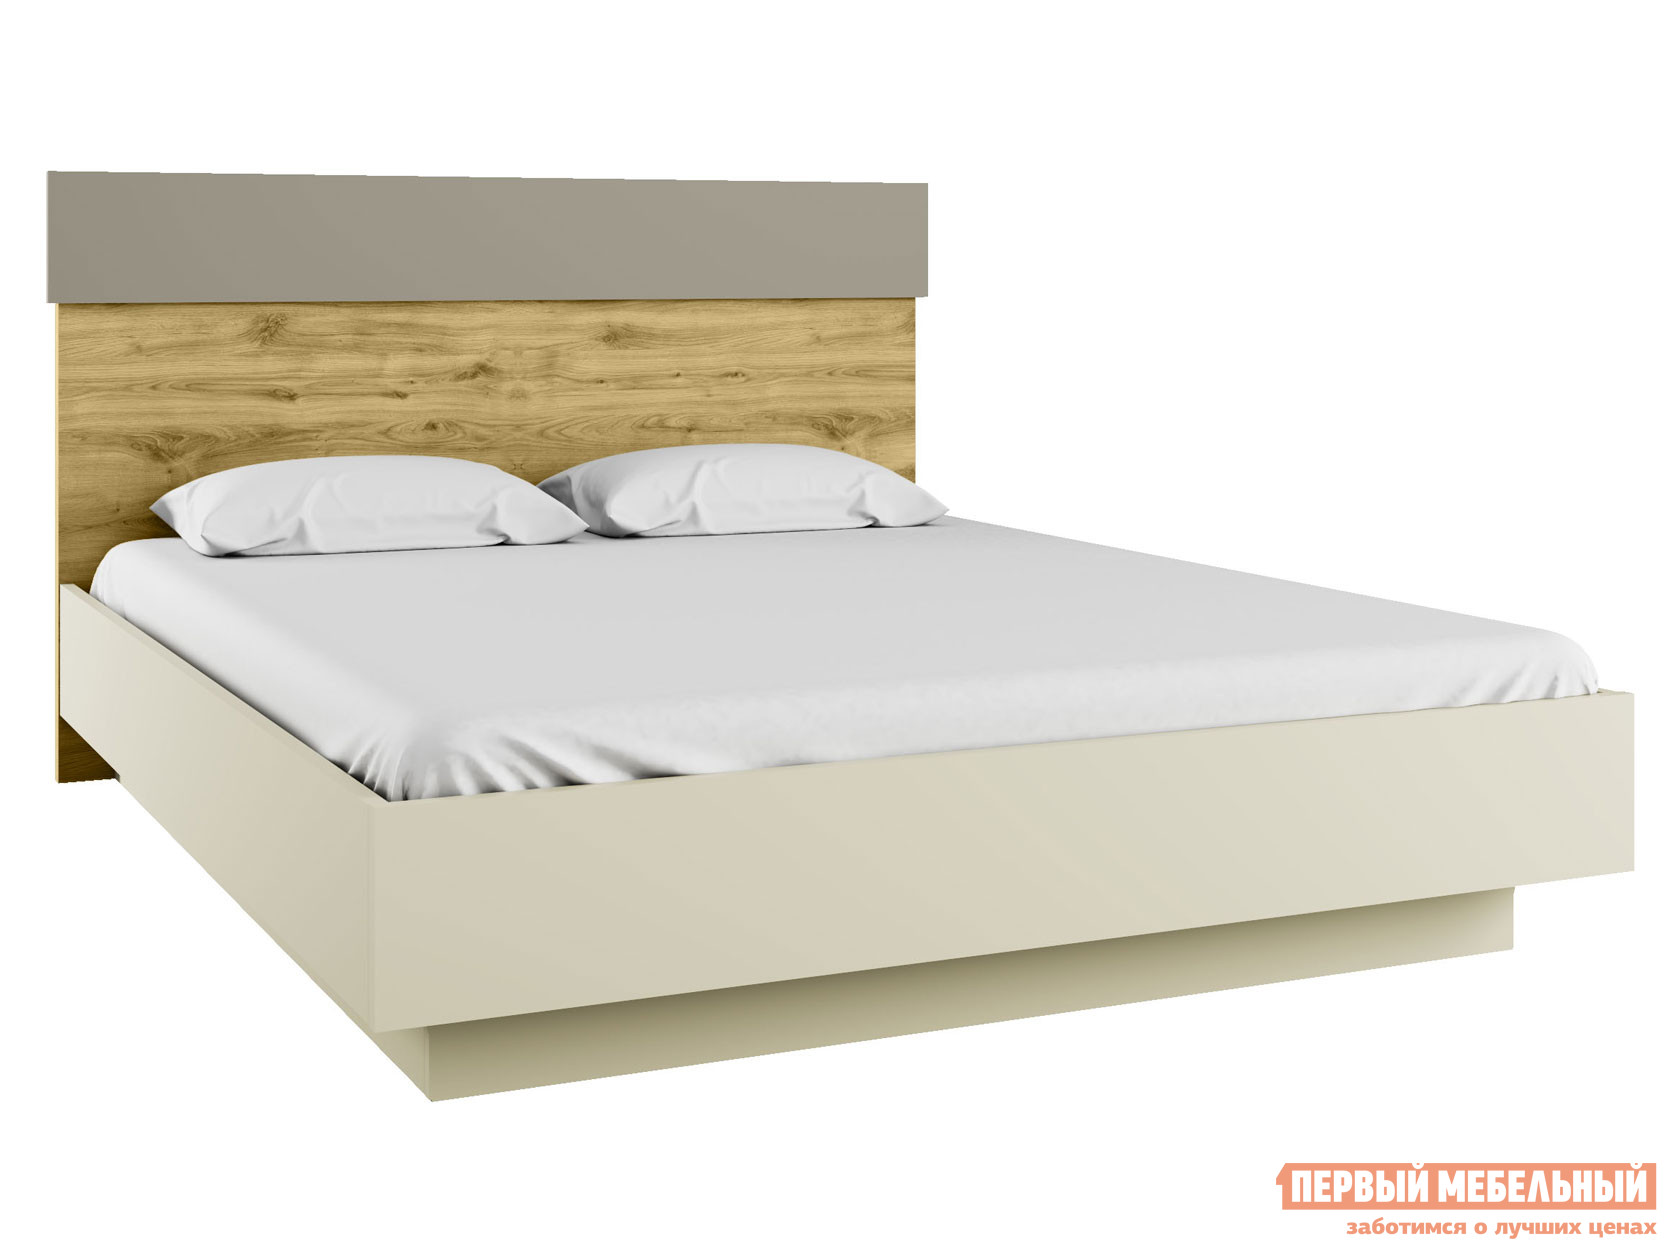 Двуспальная кровать  Модерн ПМ Персидский жемчуг / Дуб Наварра, 160х200 см, С подъемным механизмом